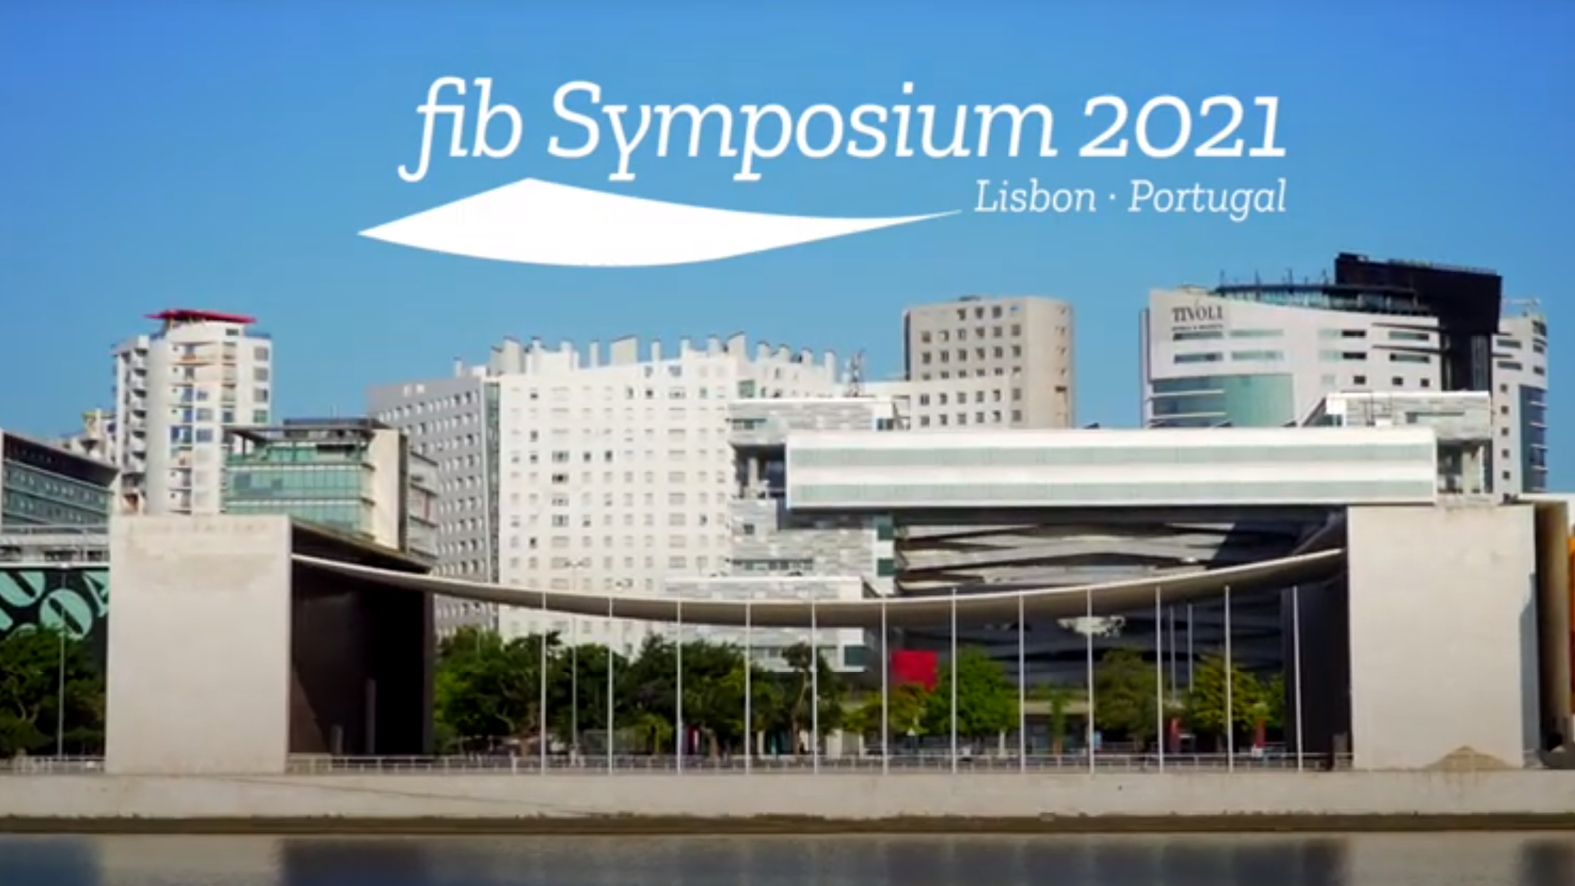 fib Symposium 2021